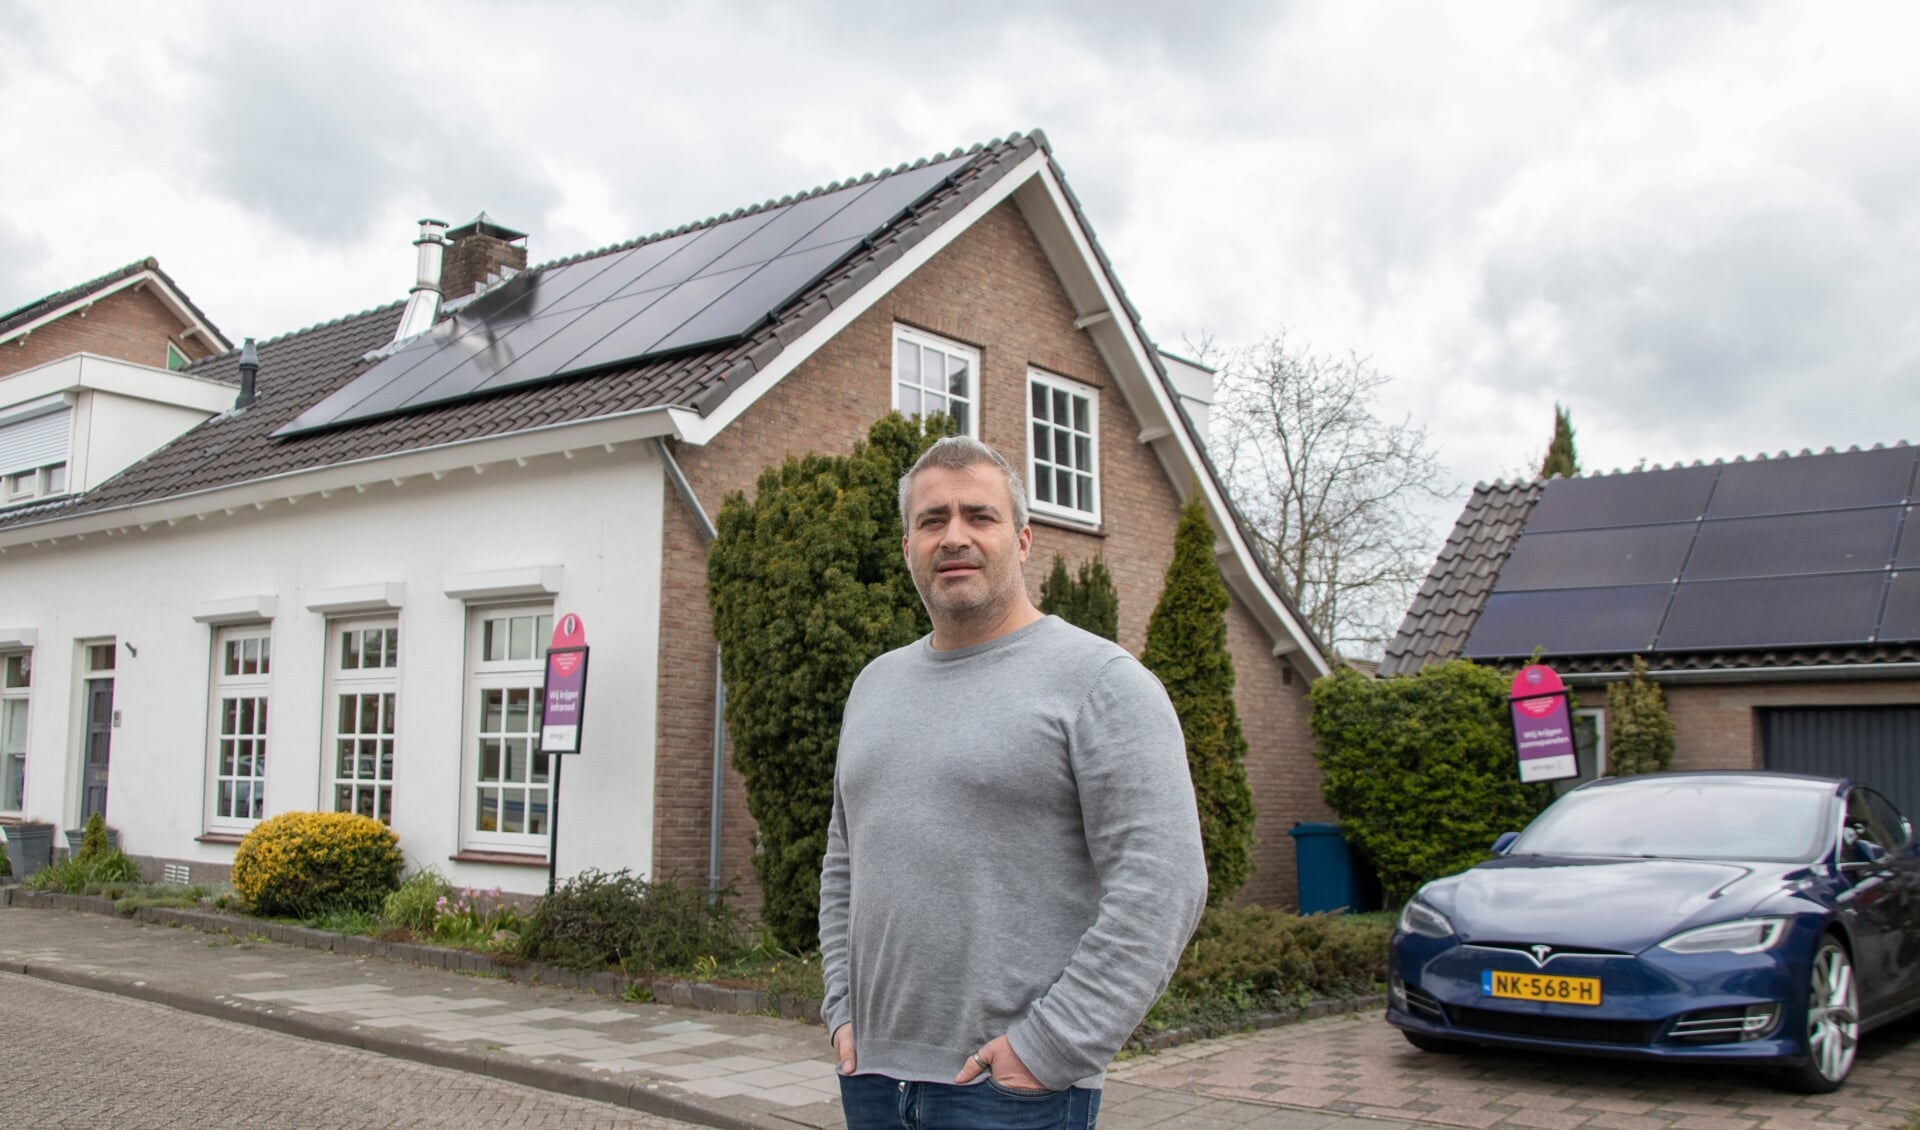 Bart-Jan van Alebeek voor zijn huis met volop zonnepanelen. Foto: Bas Ulehake